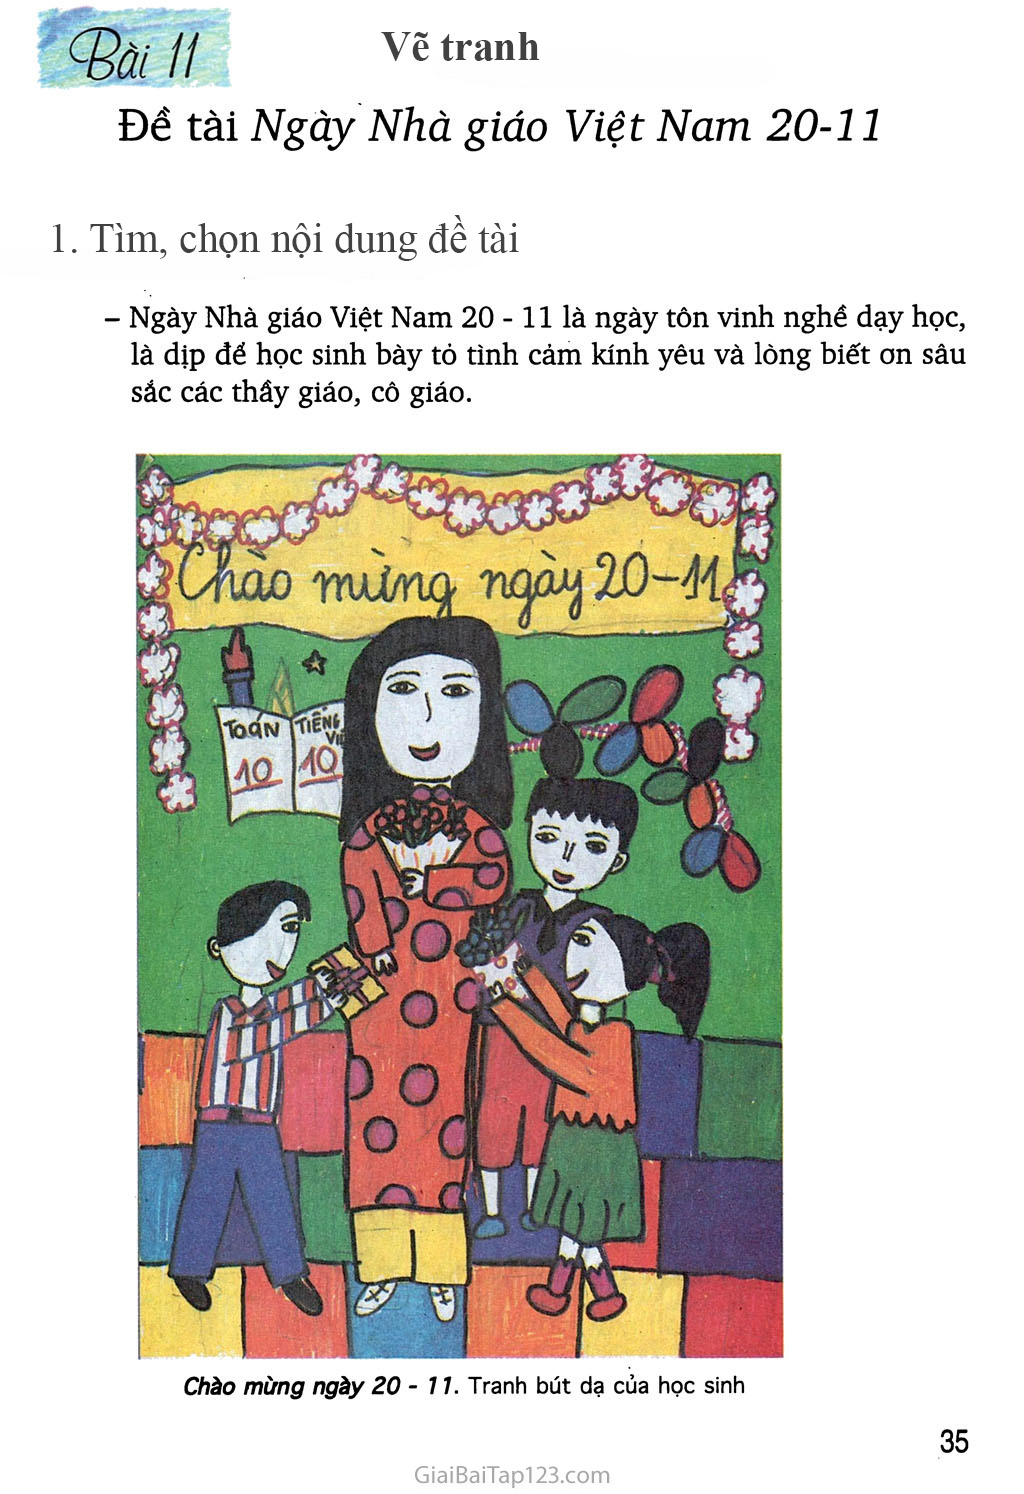 Cách vẽ tranh mĩ thuật lớp 8 Bài 9 Vẽ tranh lớp 8 Đề tài nhà giáo Việt Nam  2011 Đơn giản và đẹp nhất